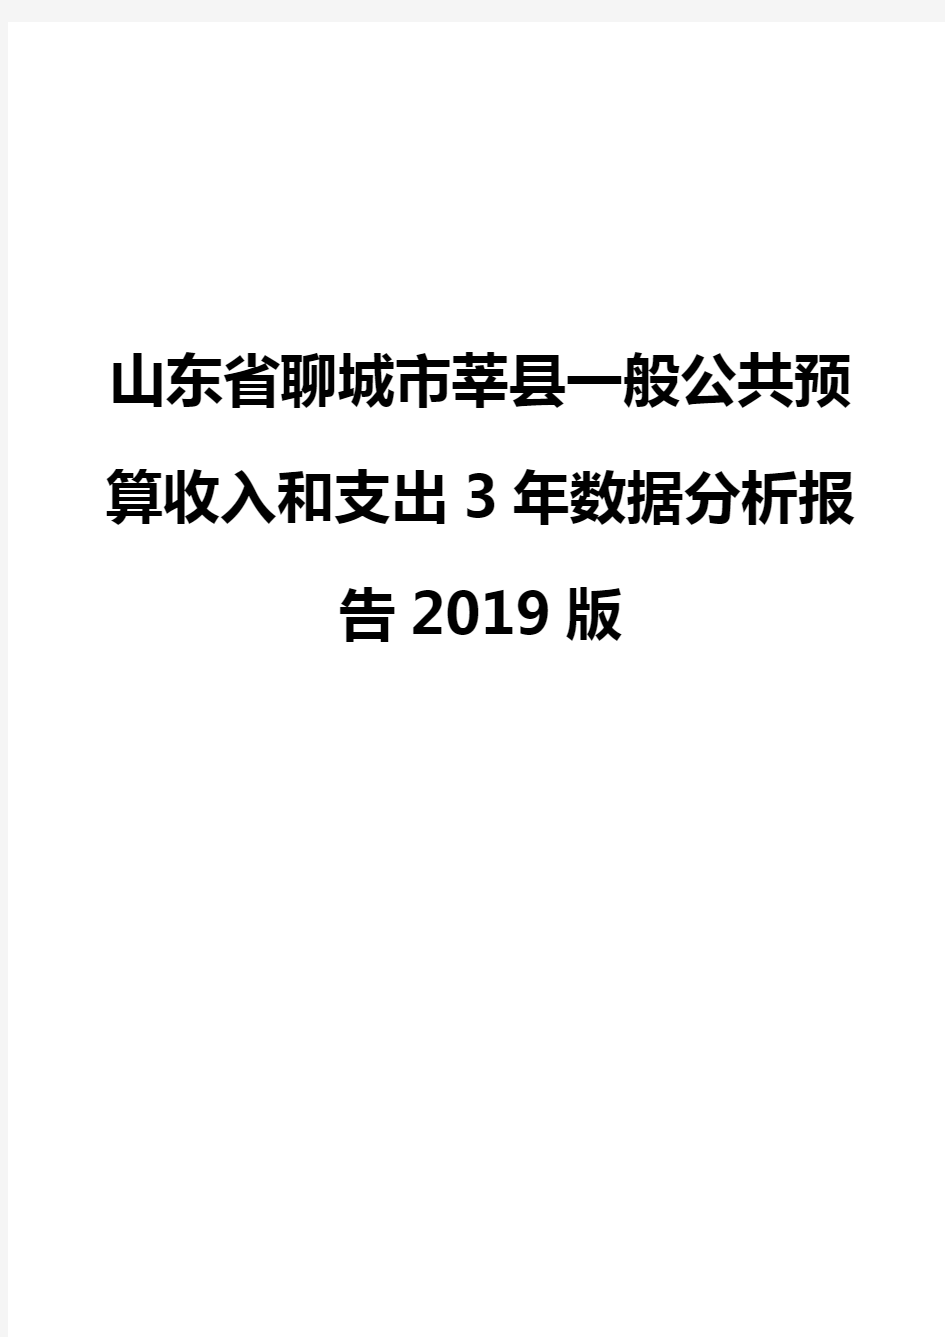 山东省聊城市莘县一般公共预算收入和支出3年数据分析报告2019版